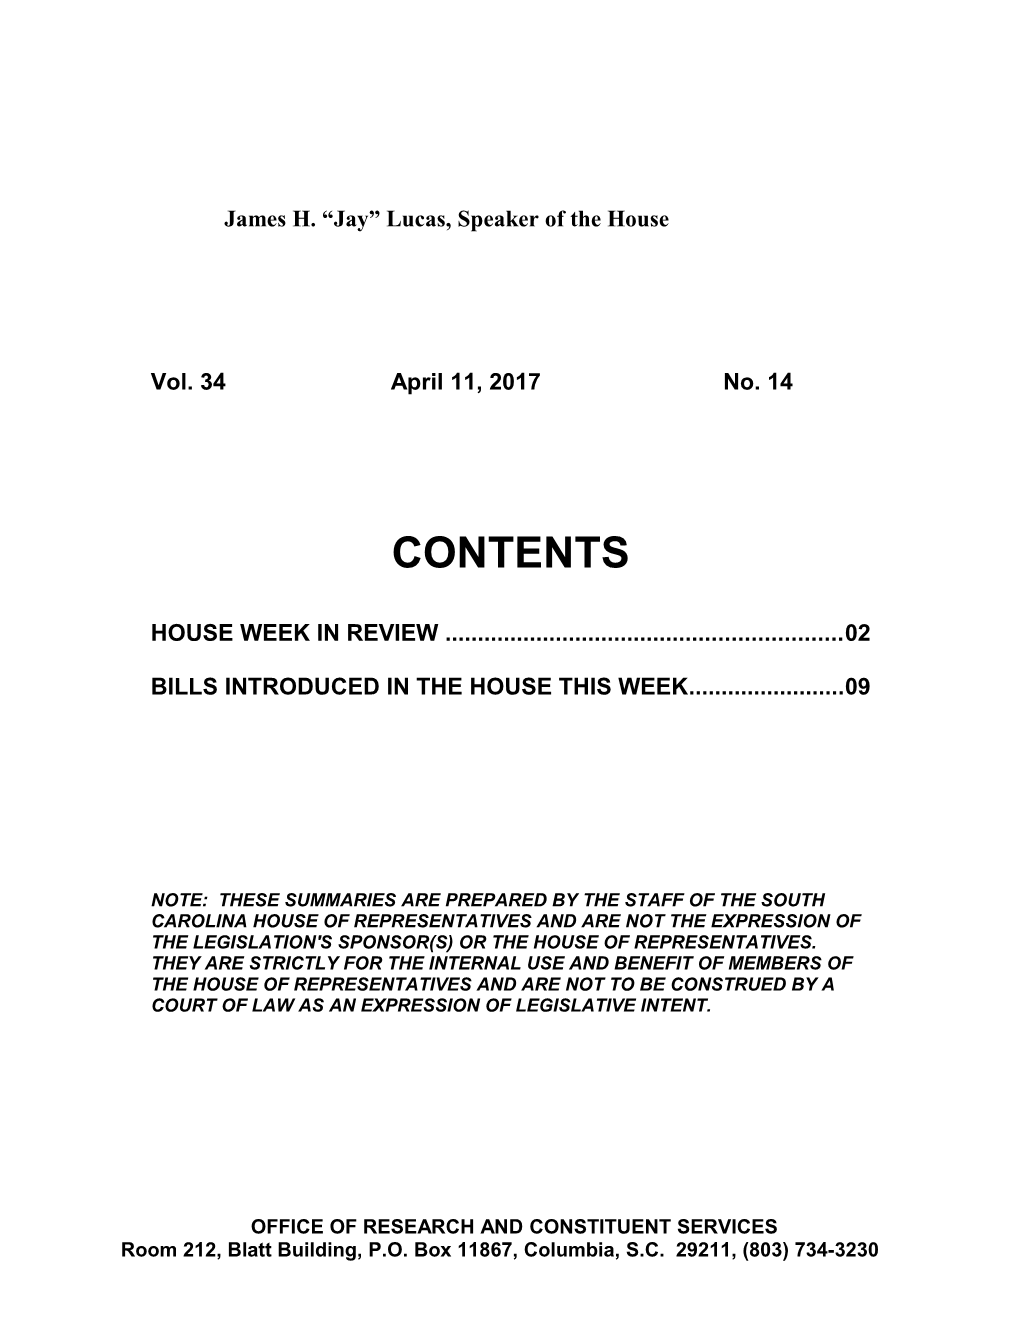 Legislative Update - Vol. 34 No. 14 April 11, 2017 - South Carolina Legislature Online